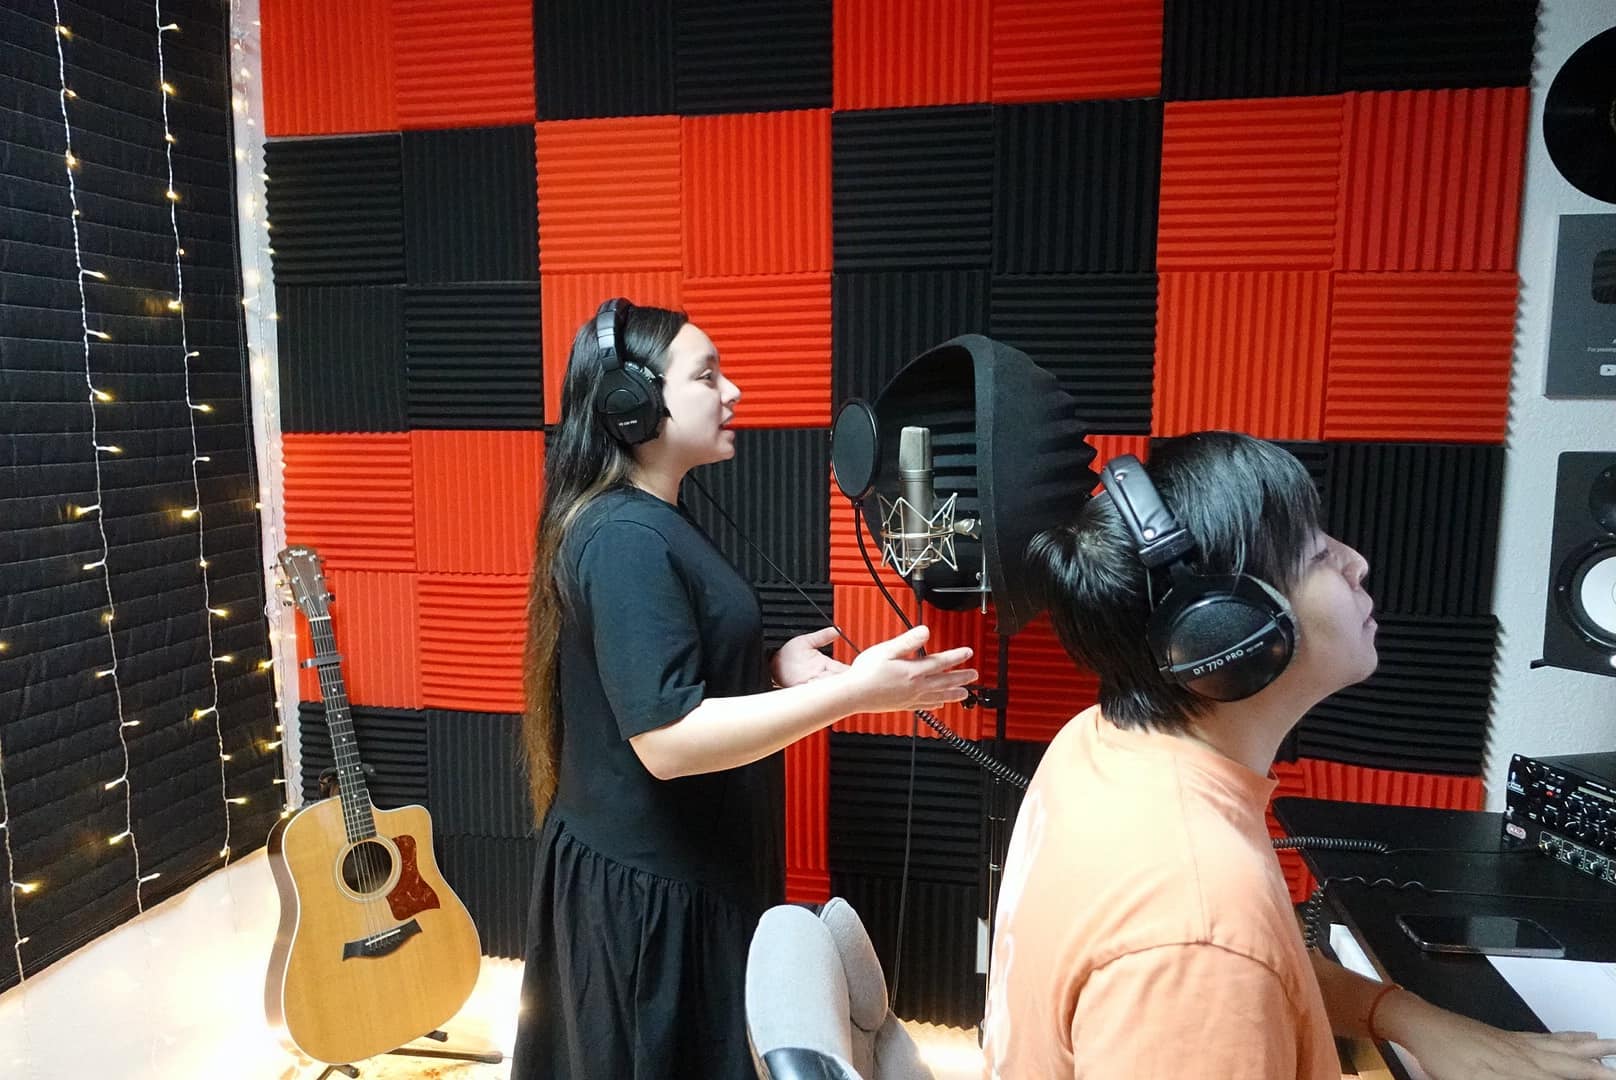 Con gái ruột cố ca sĩ Phi Nhung học hát tặng mẹ, giọng hát y hệt Phi Nhung khiến gia đình giật mình